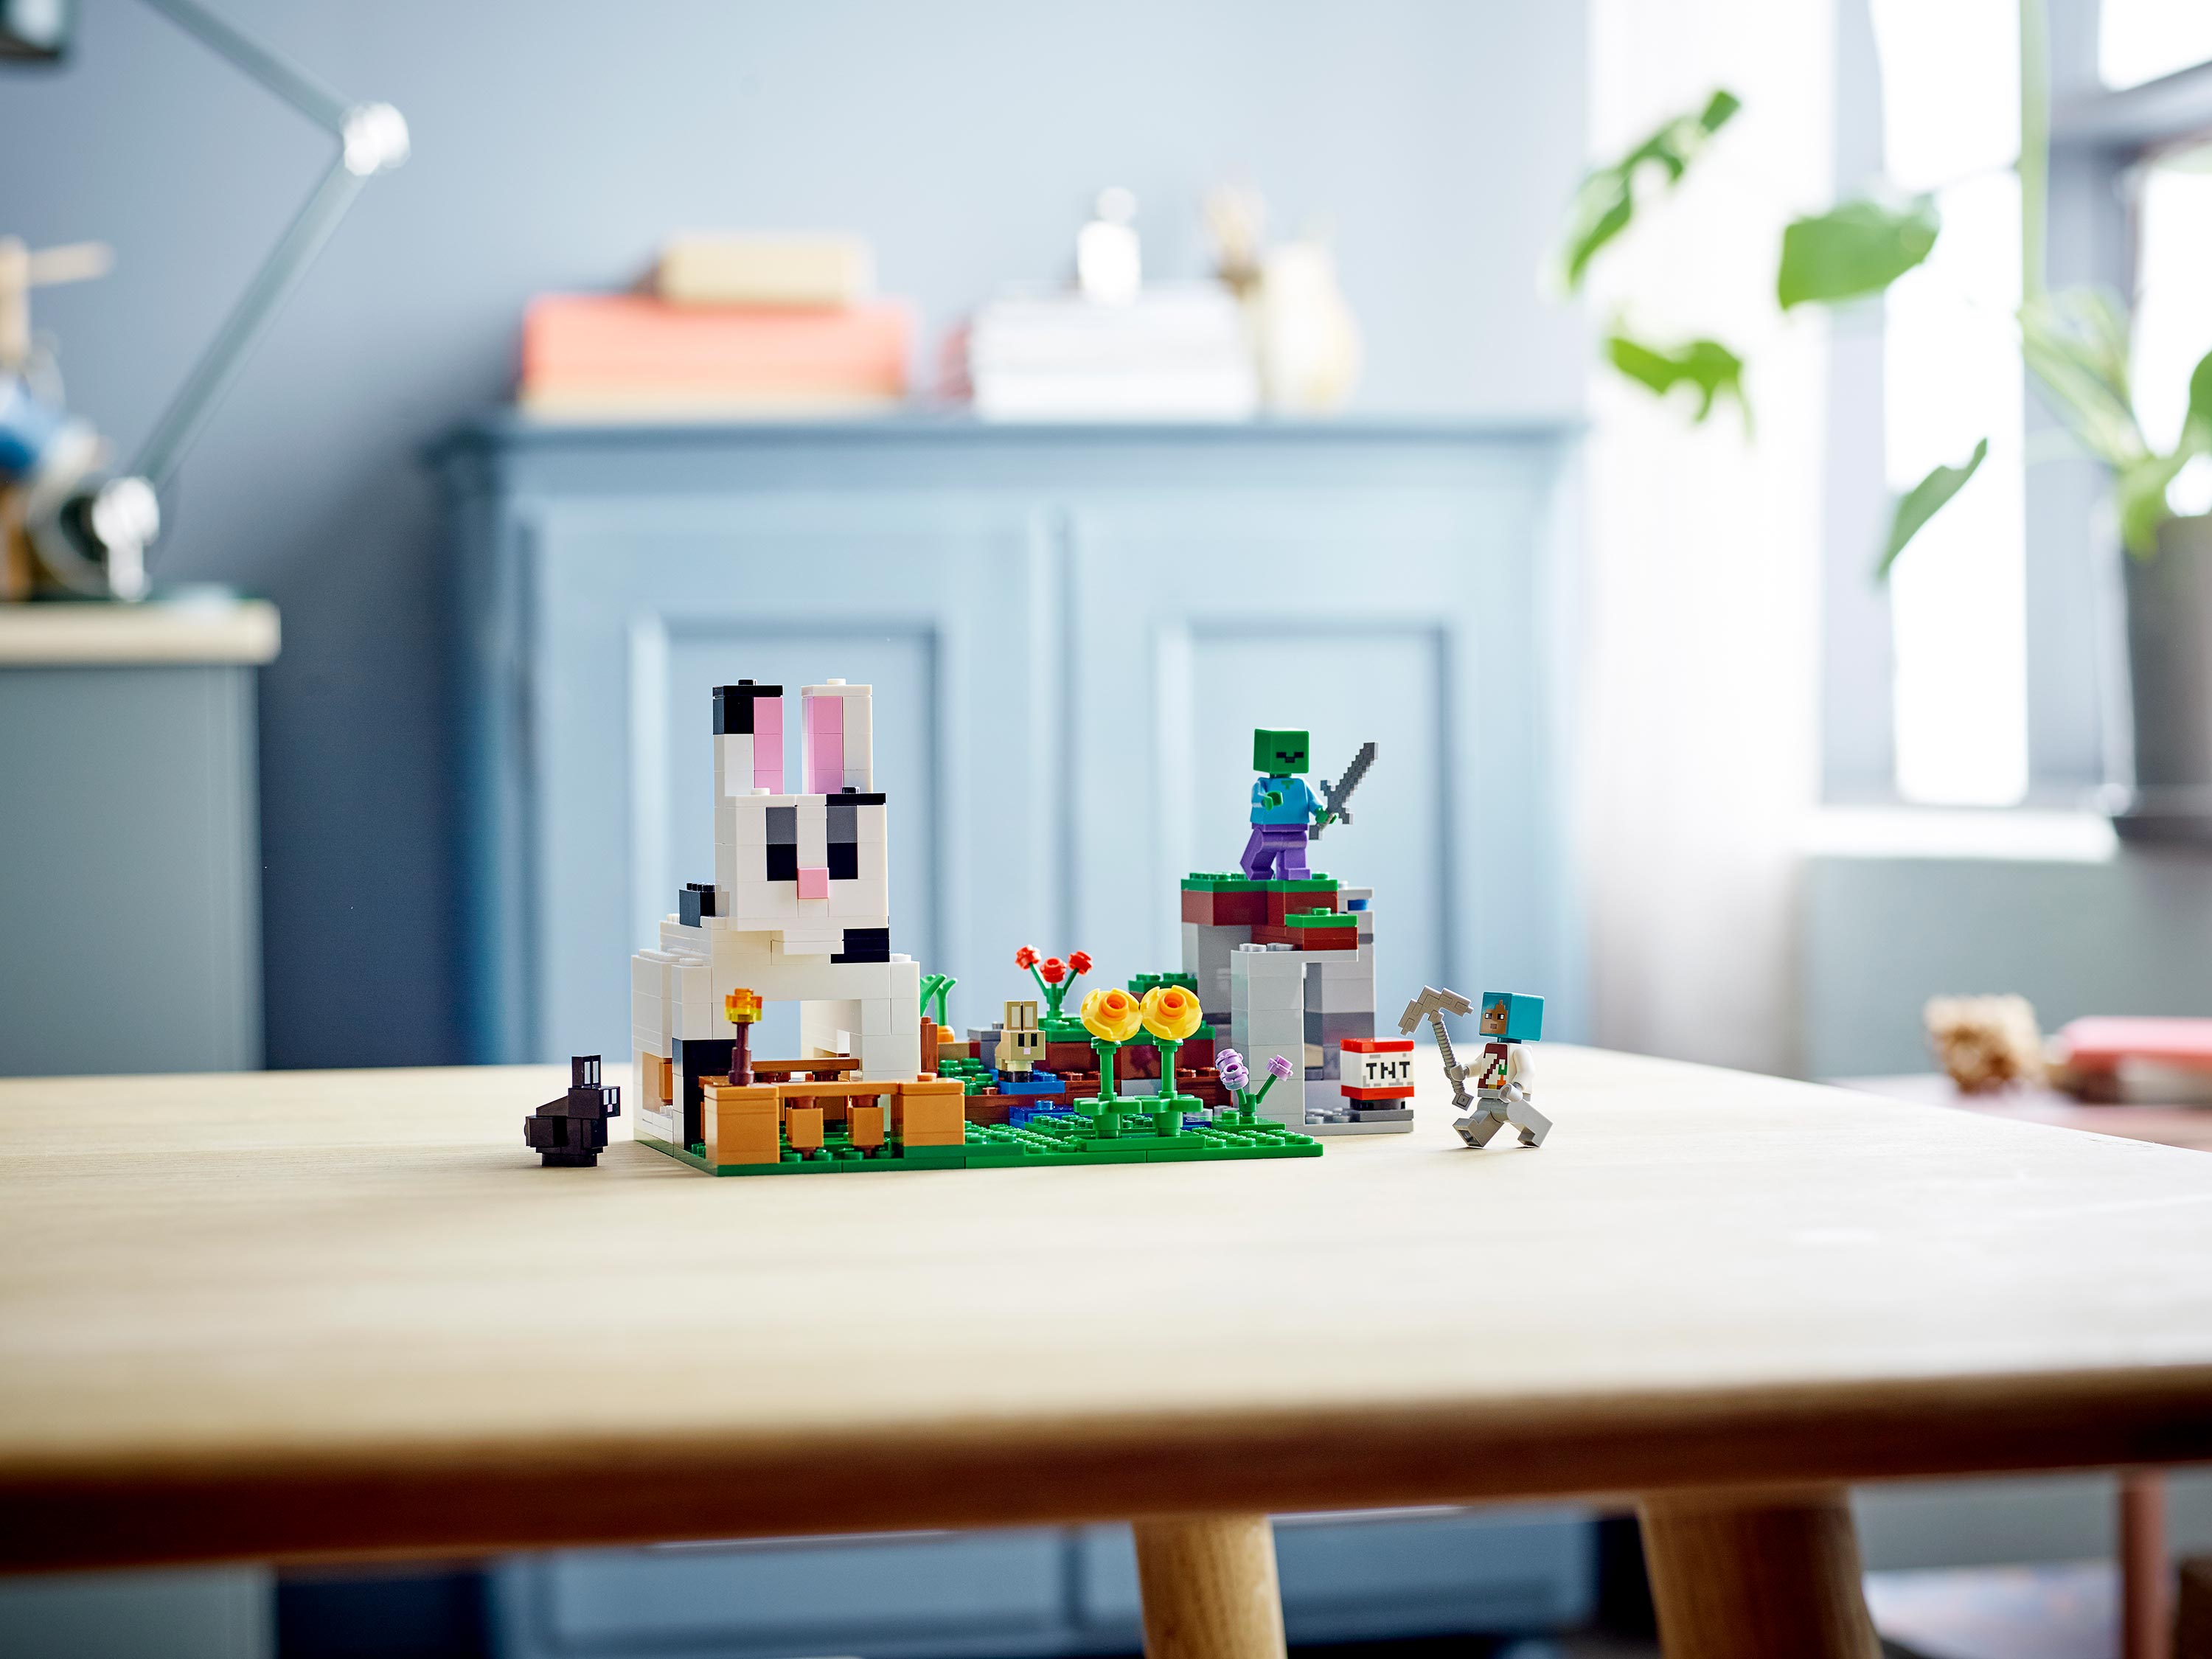 Конструктор LEGO Minecraft 21181 Кроличье ранчо